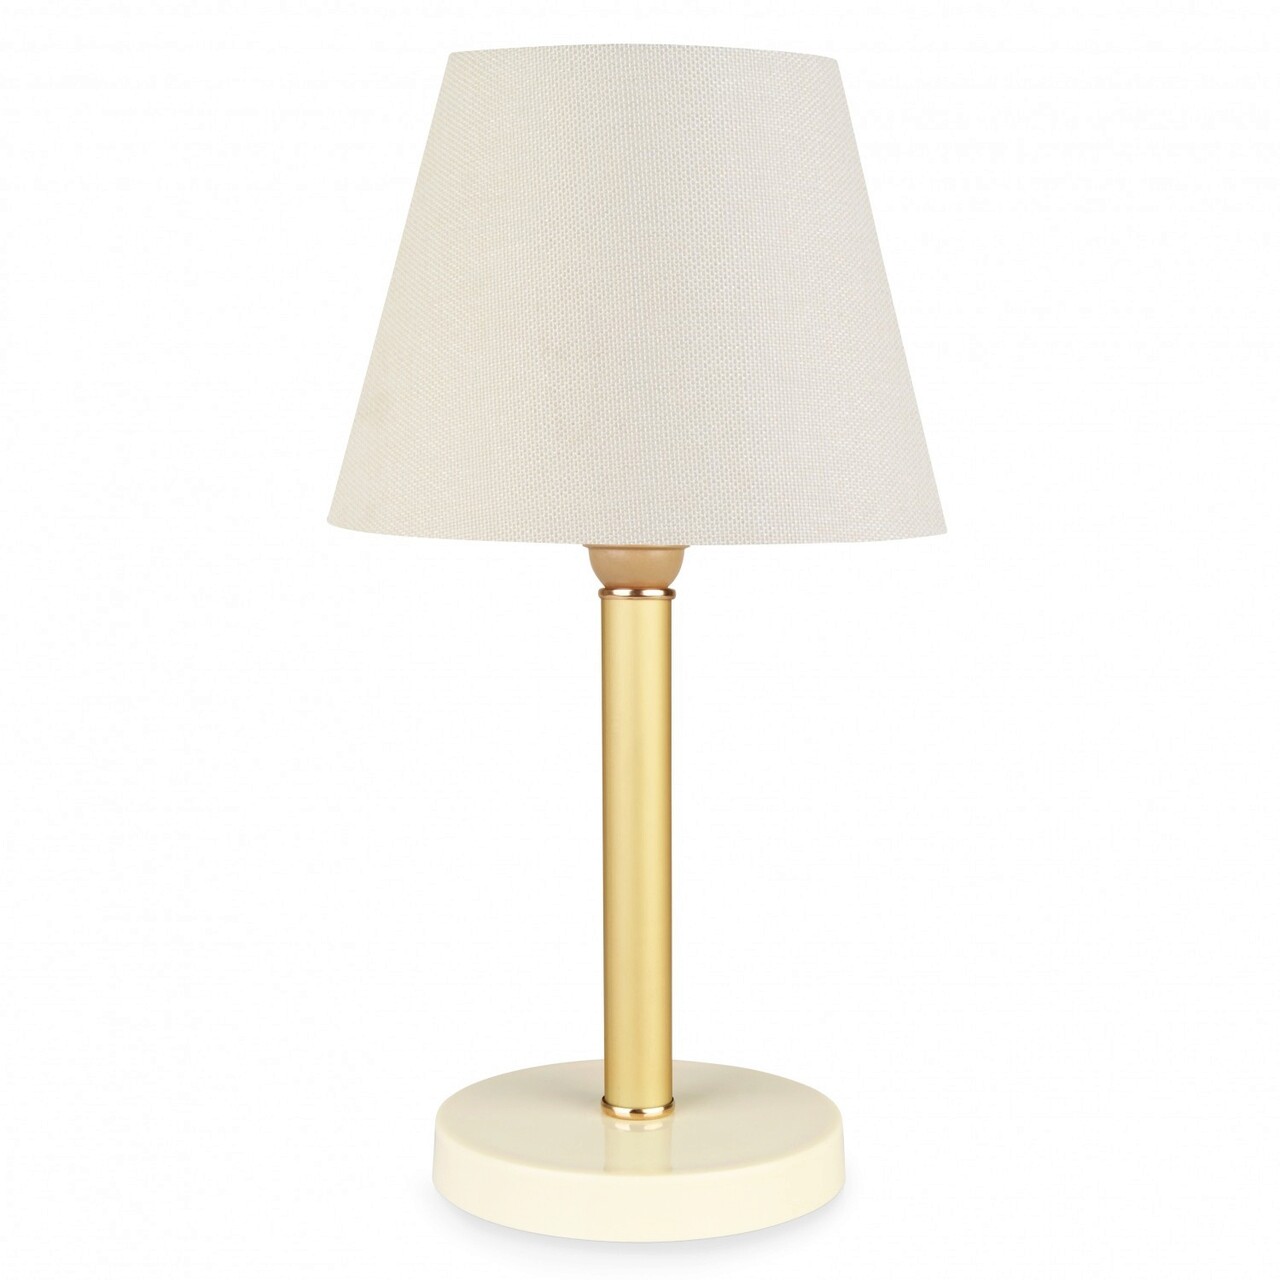 Lampa De Masa, Insignio, 780SGN1651, PVC, Alb/Auriu